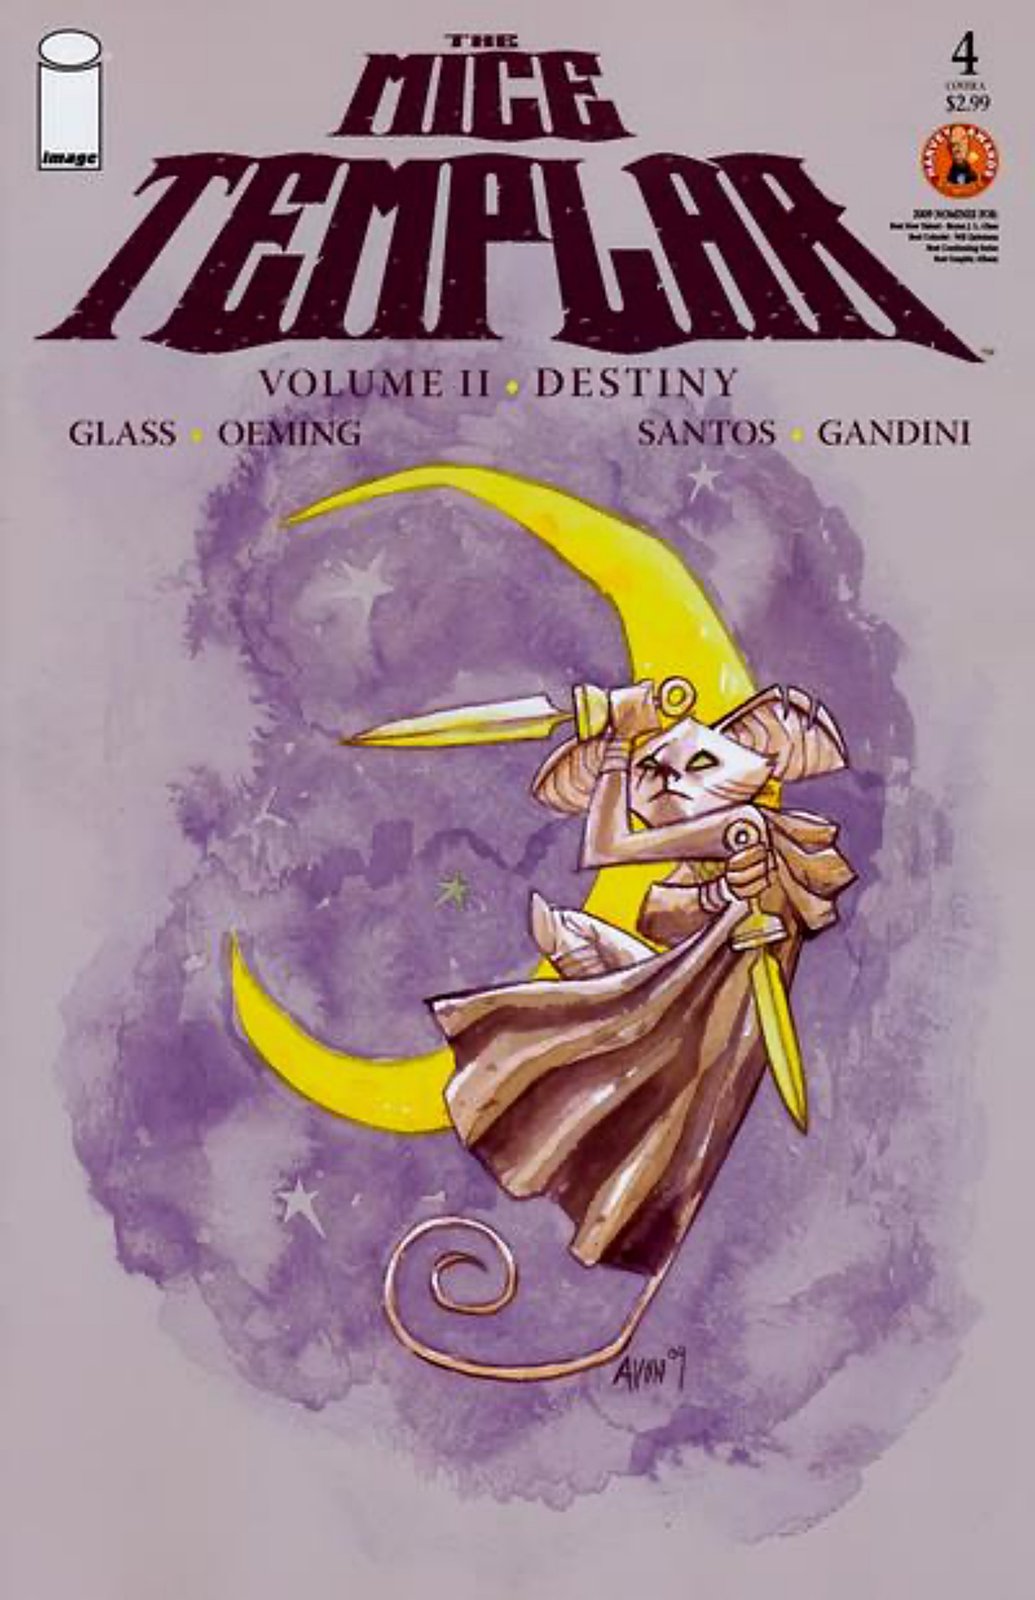 The Mice Templar Volume II: Destiny #4A (2009-2010) Image Comics